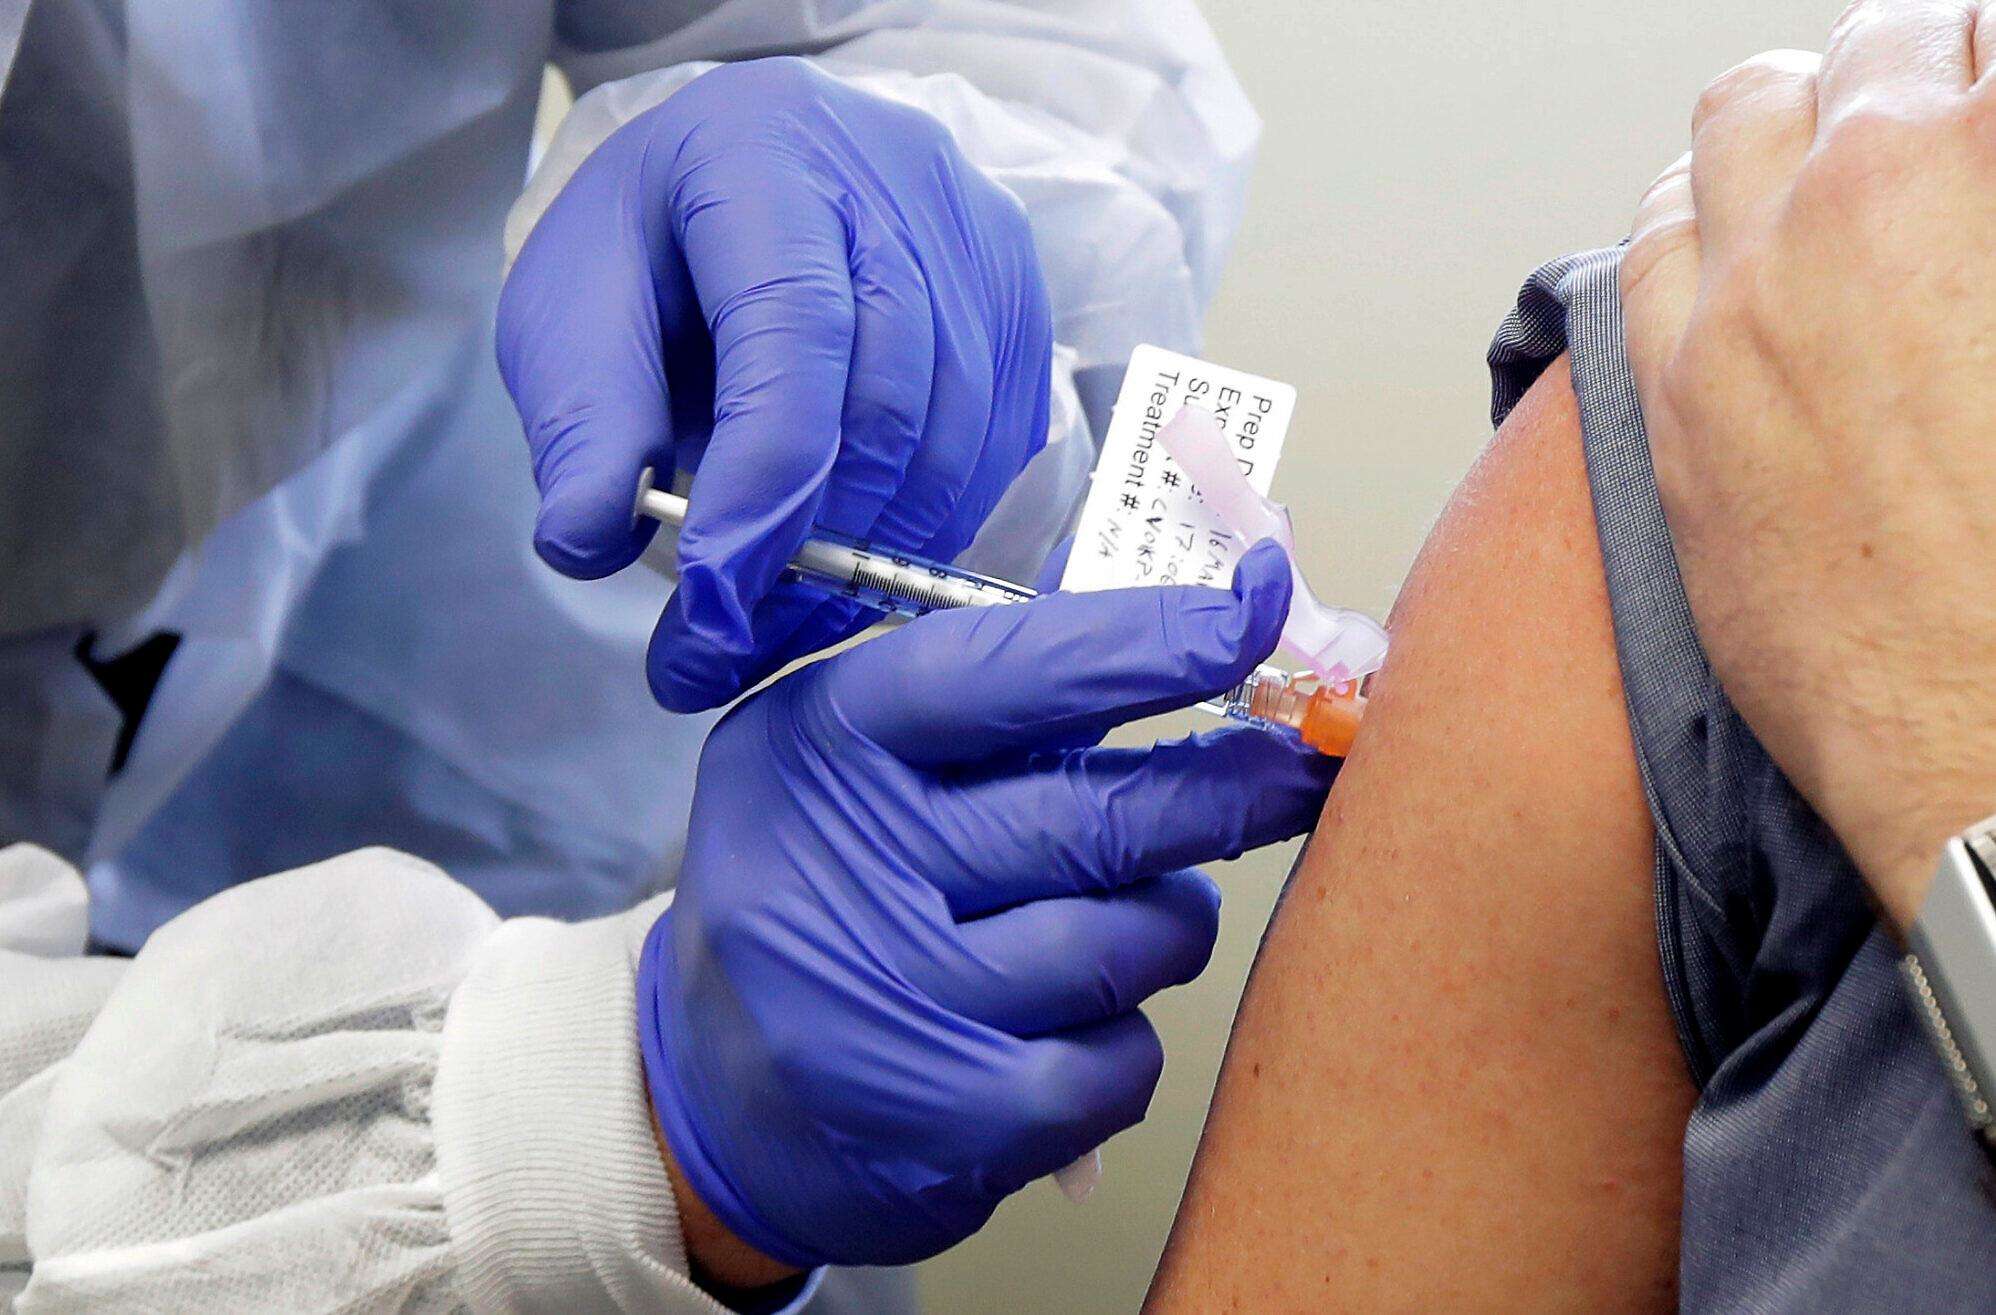 Corona vaccine:ऑक्सफर्ड यूनिवर्सिटी की वैक्सीन का होगा ट्रायल, सीरम इंस्टीट्यूट को मिली अनुमति